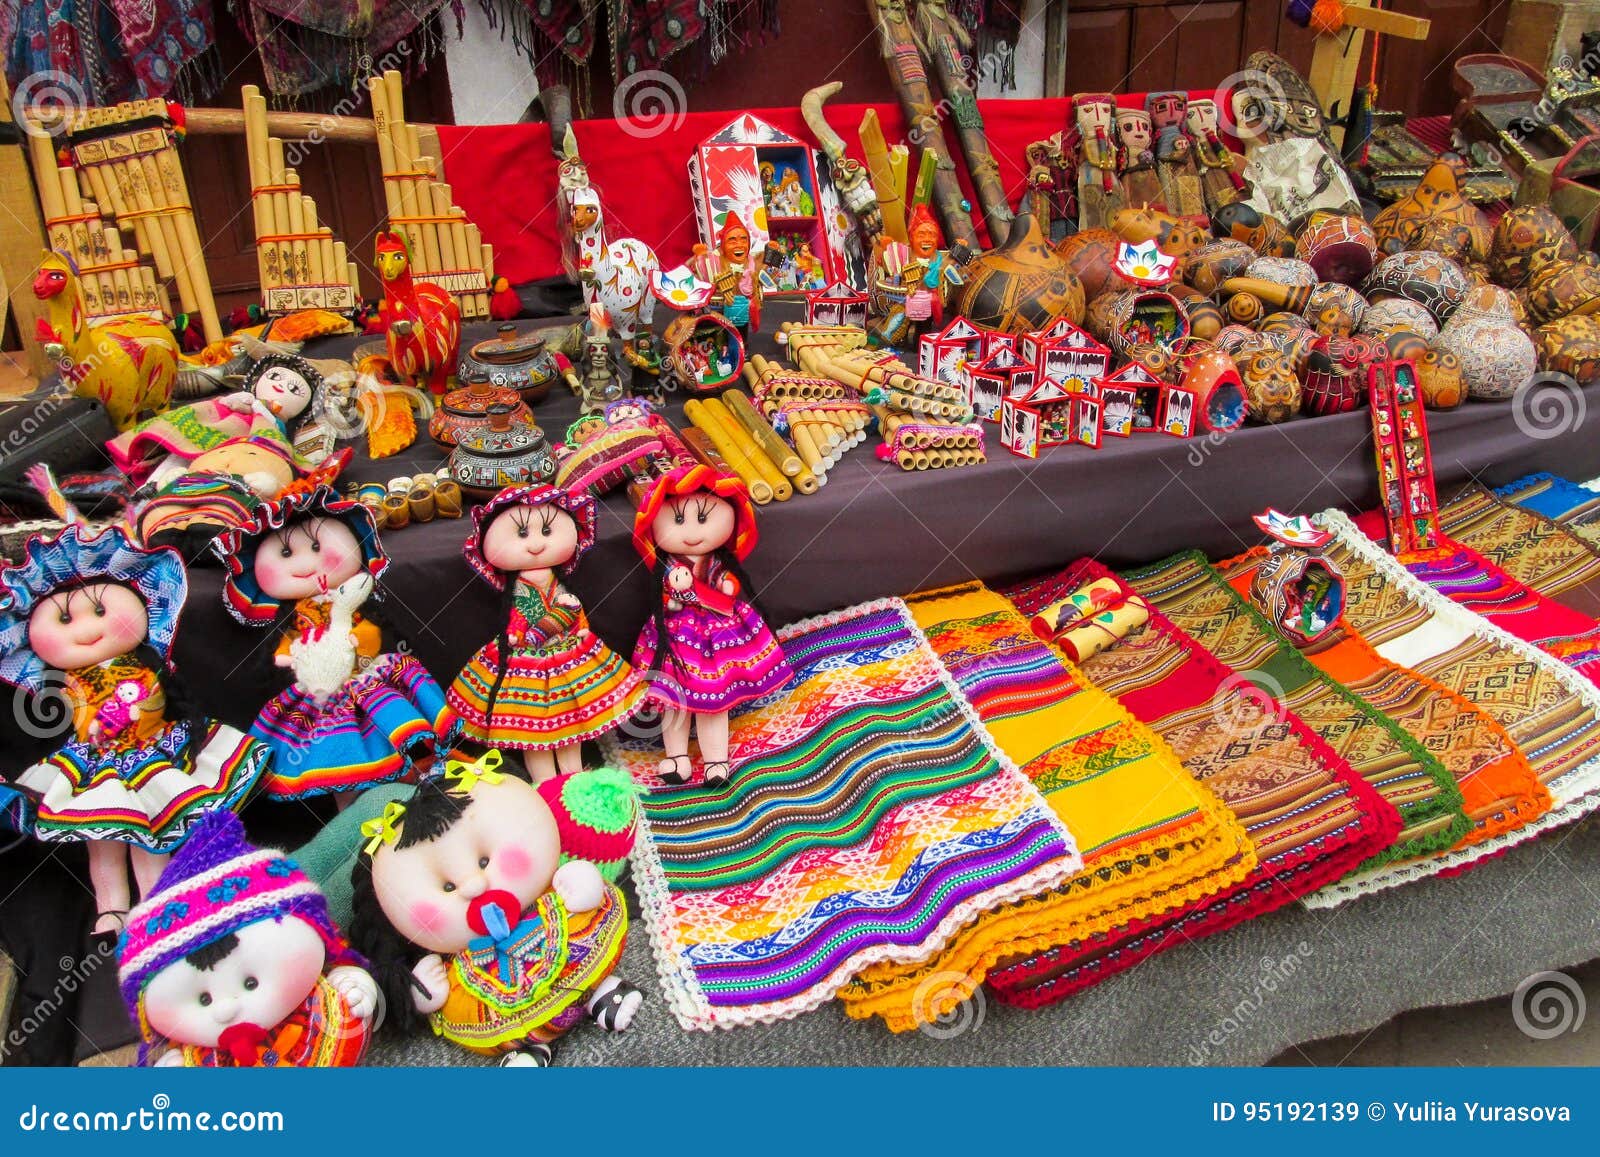 idols and dolls at mercado de las brujas in bolivia